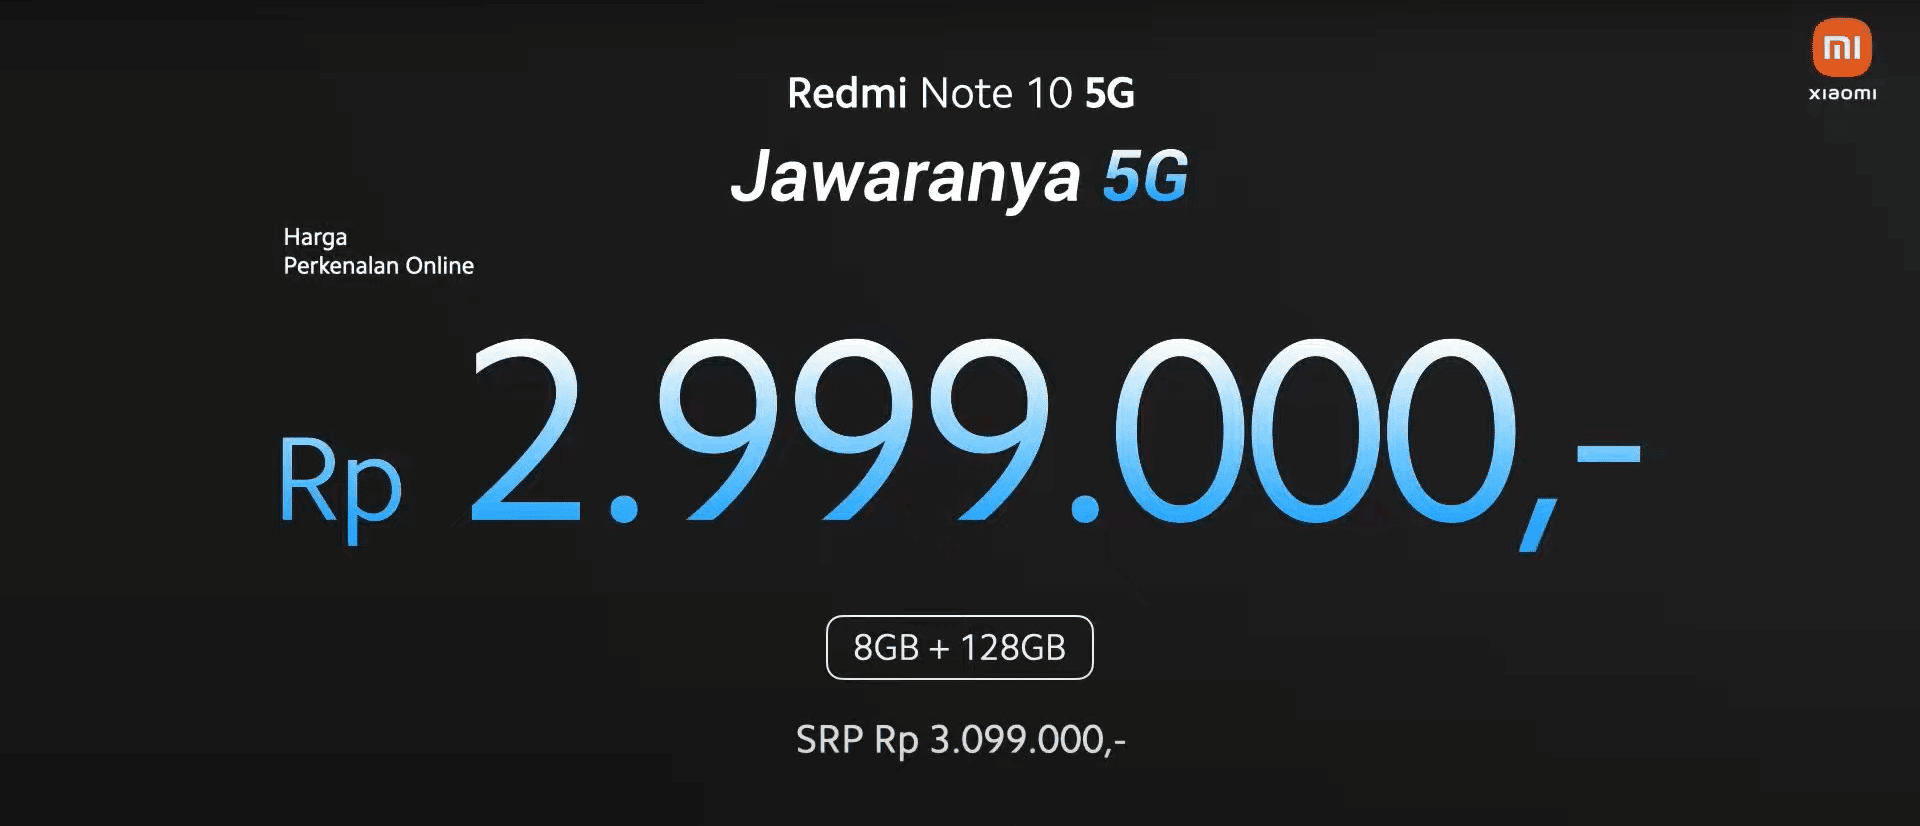 redmi note 10 5g price